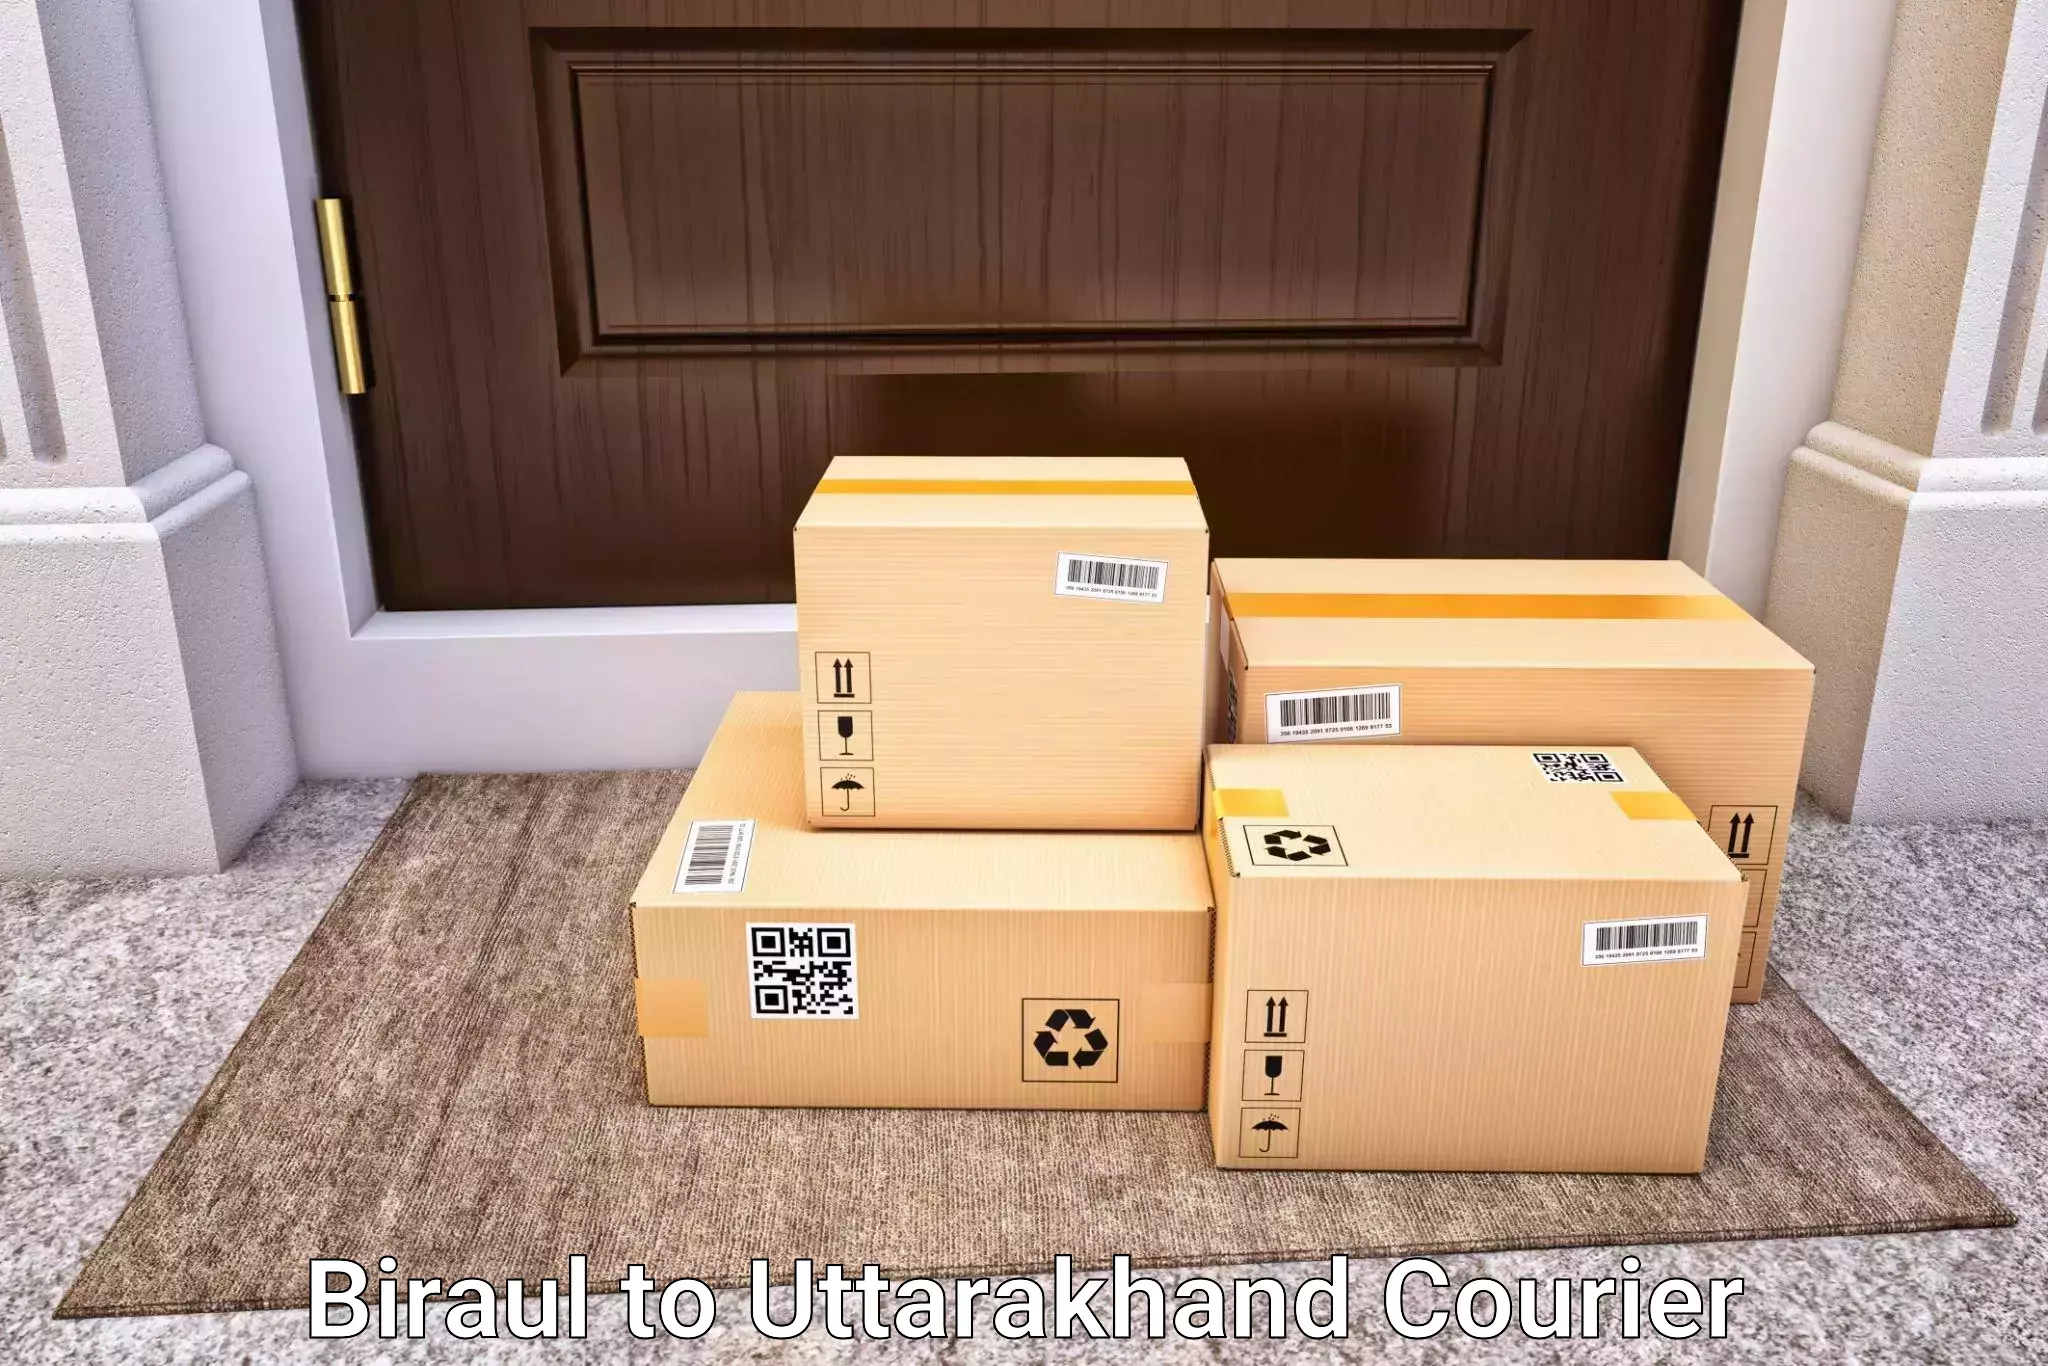 Luggage shipping planner Biraul to Lansdowne